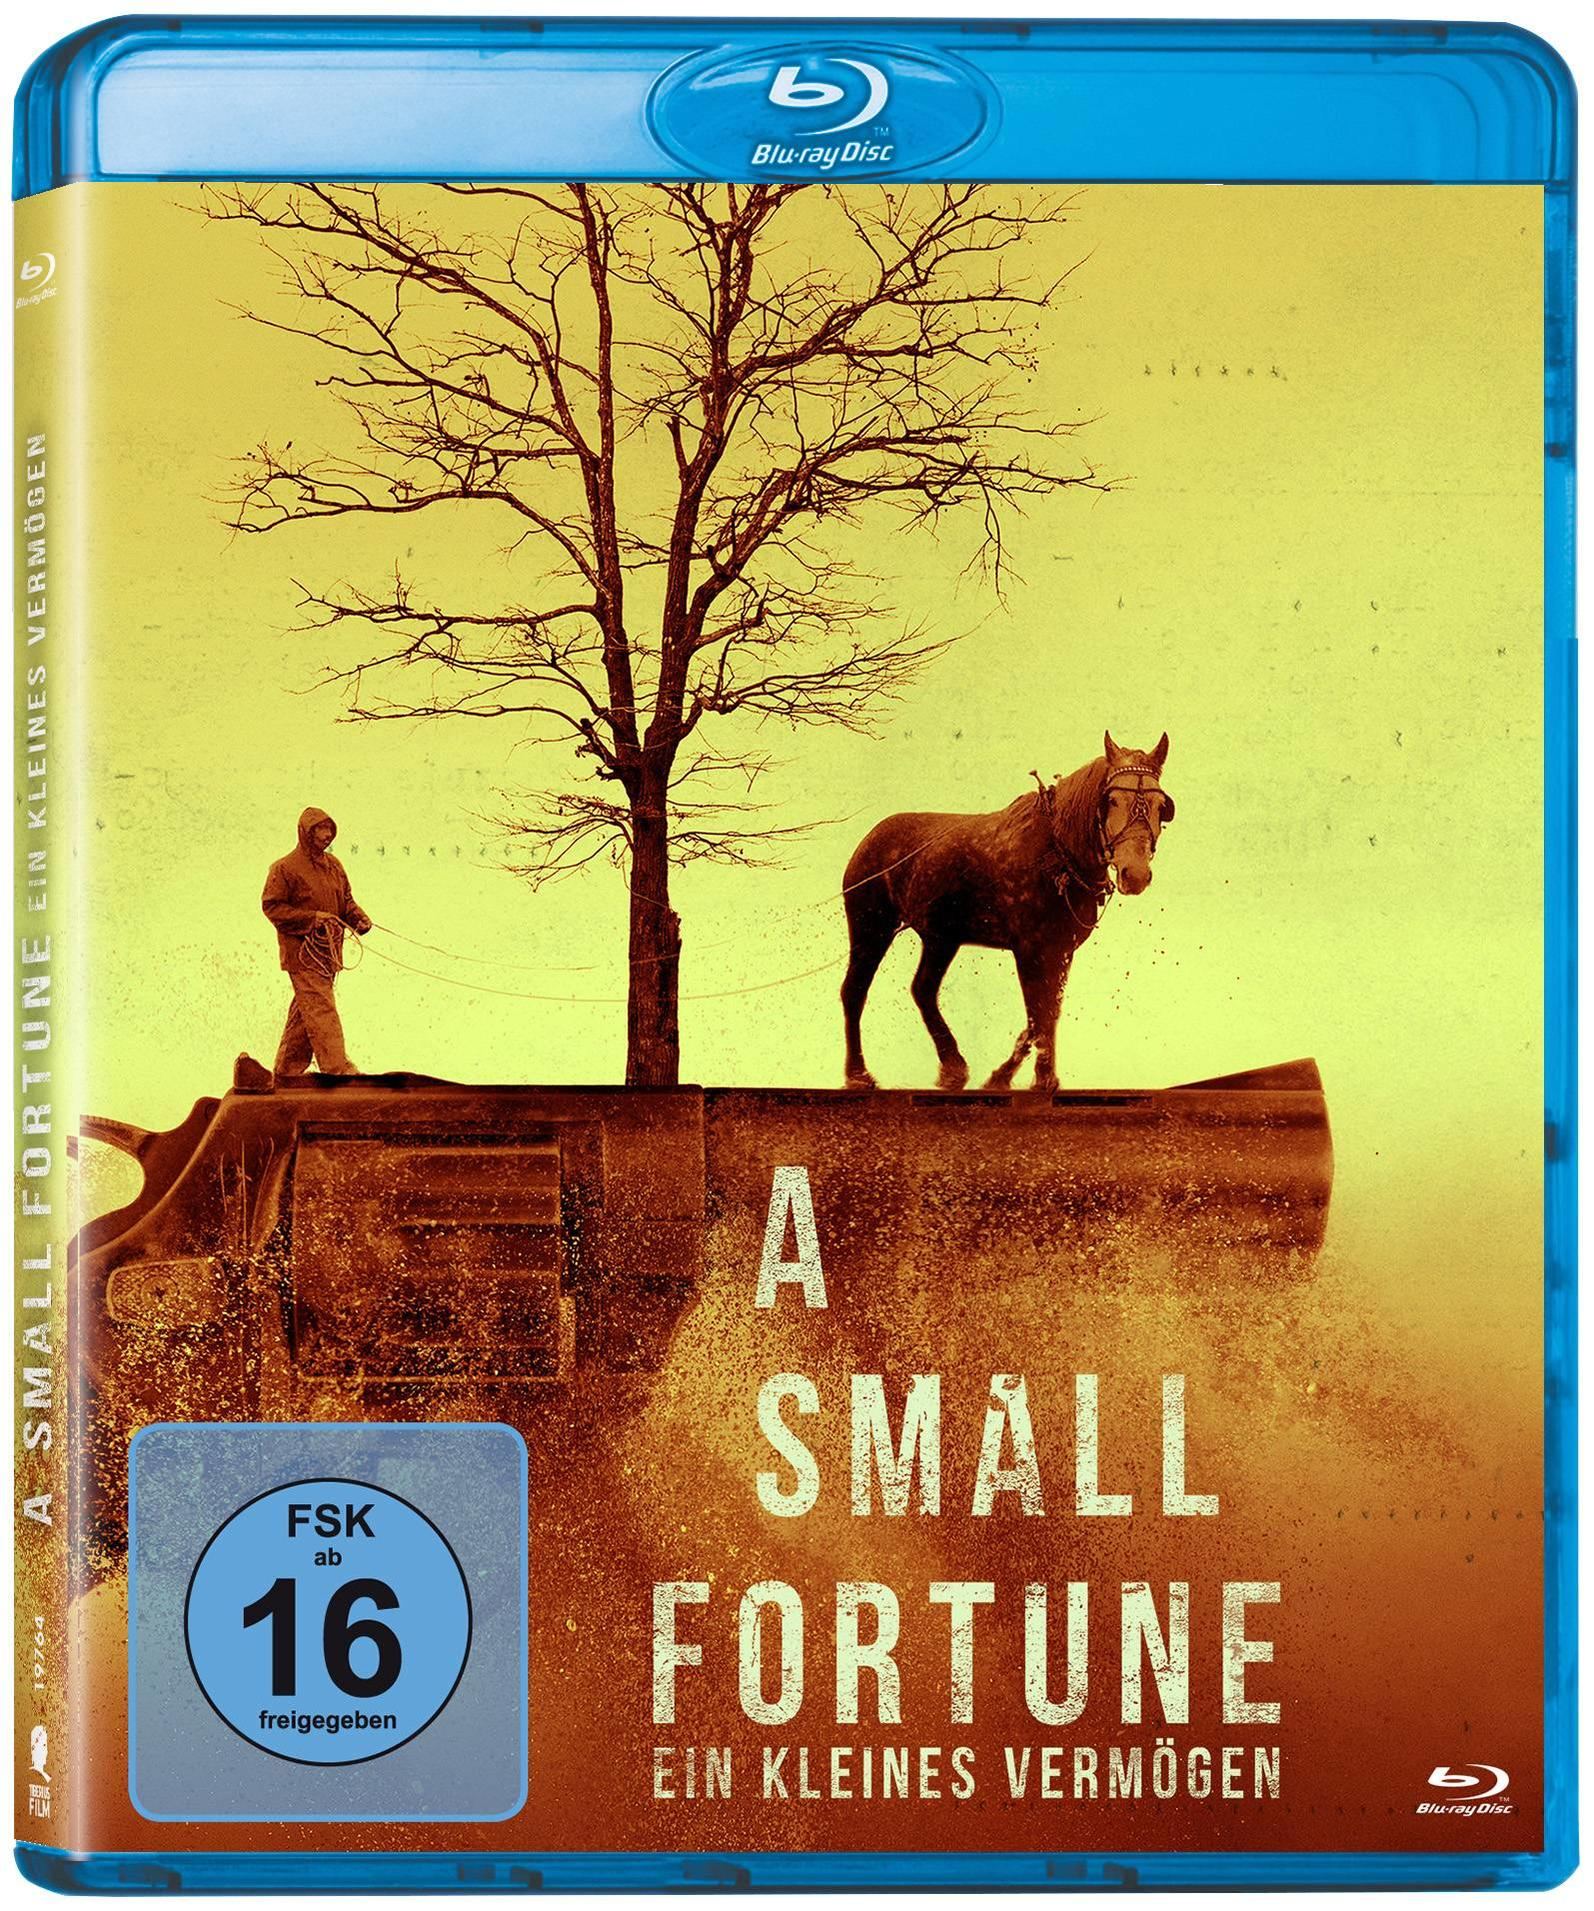 A Small Fortune-Ein Kleines Vermögen Blu-ray